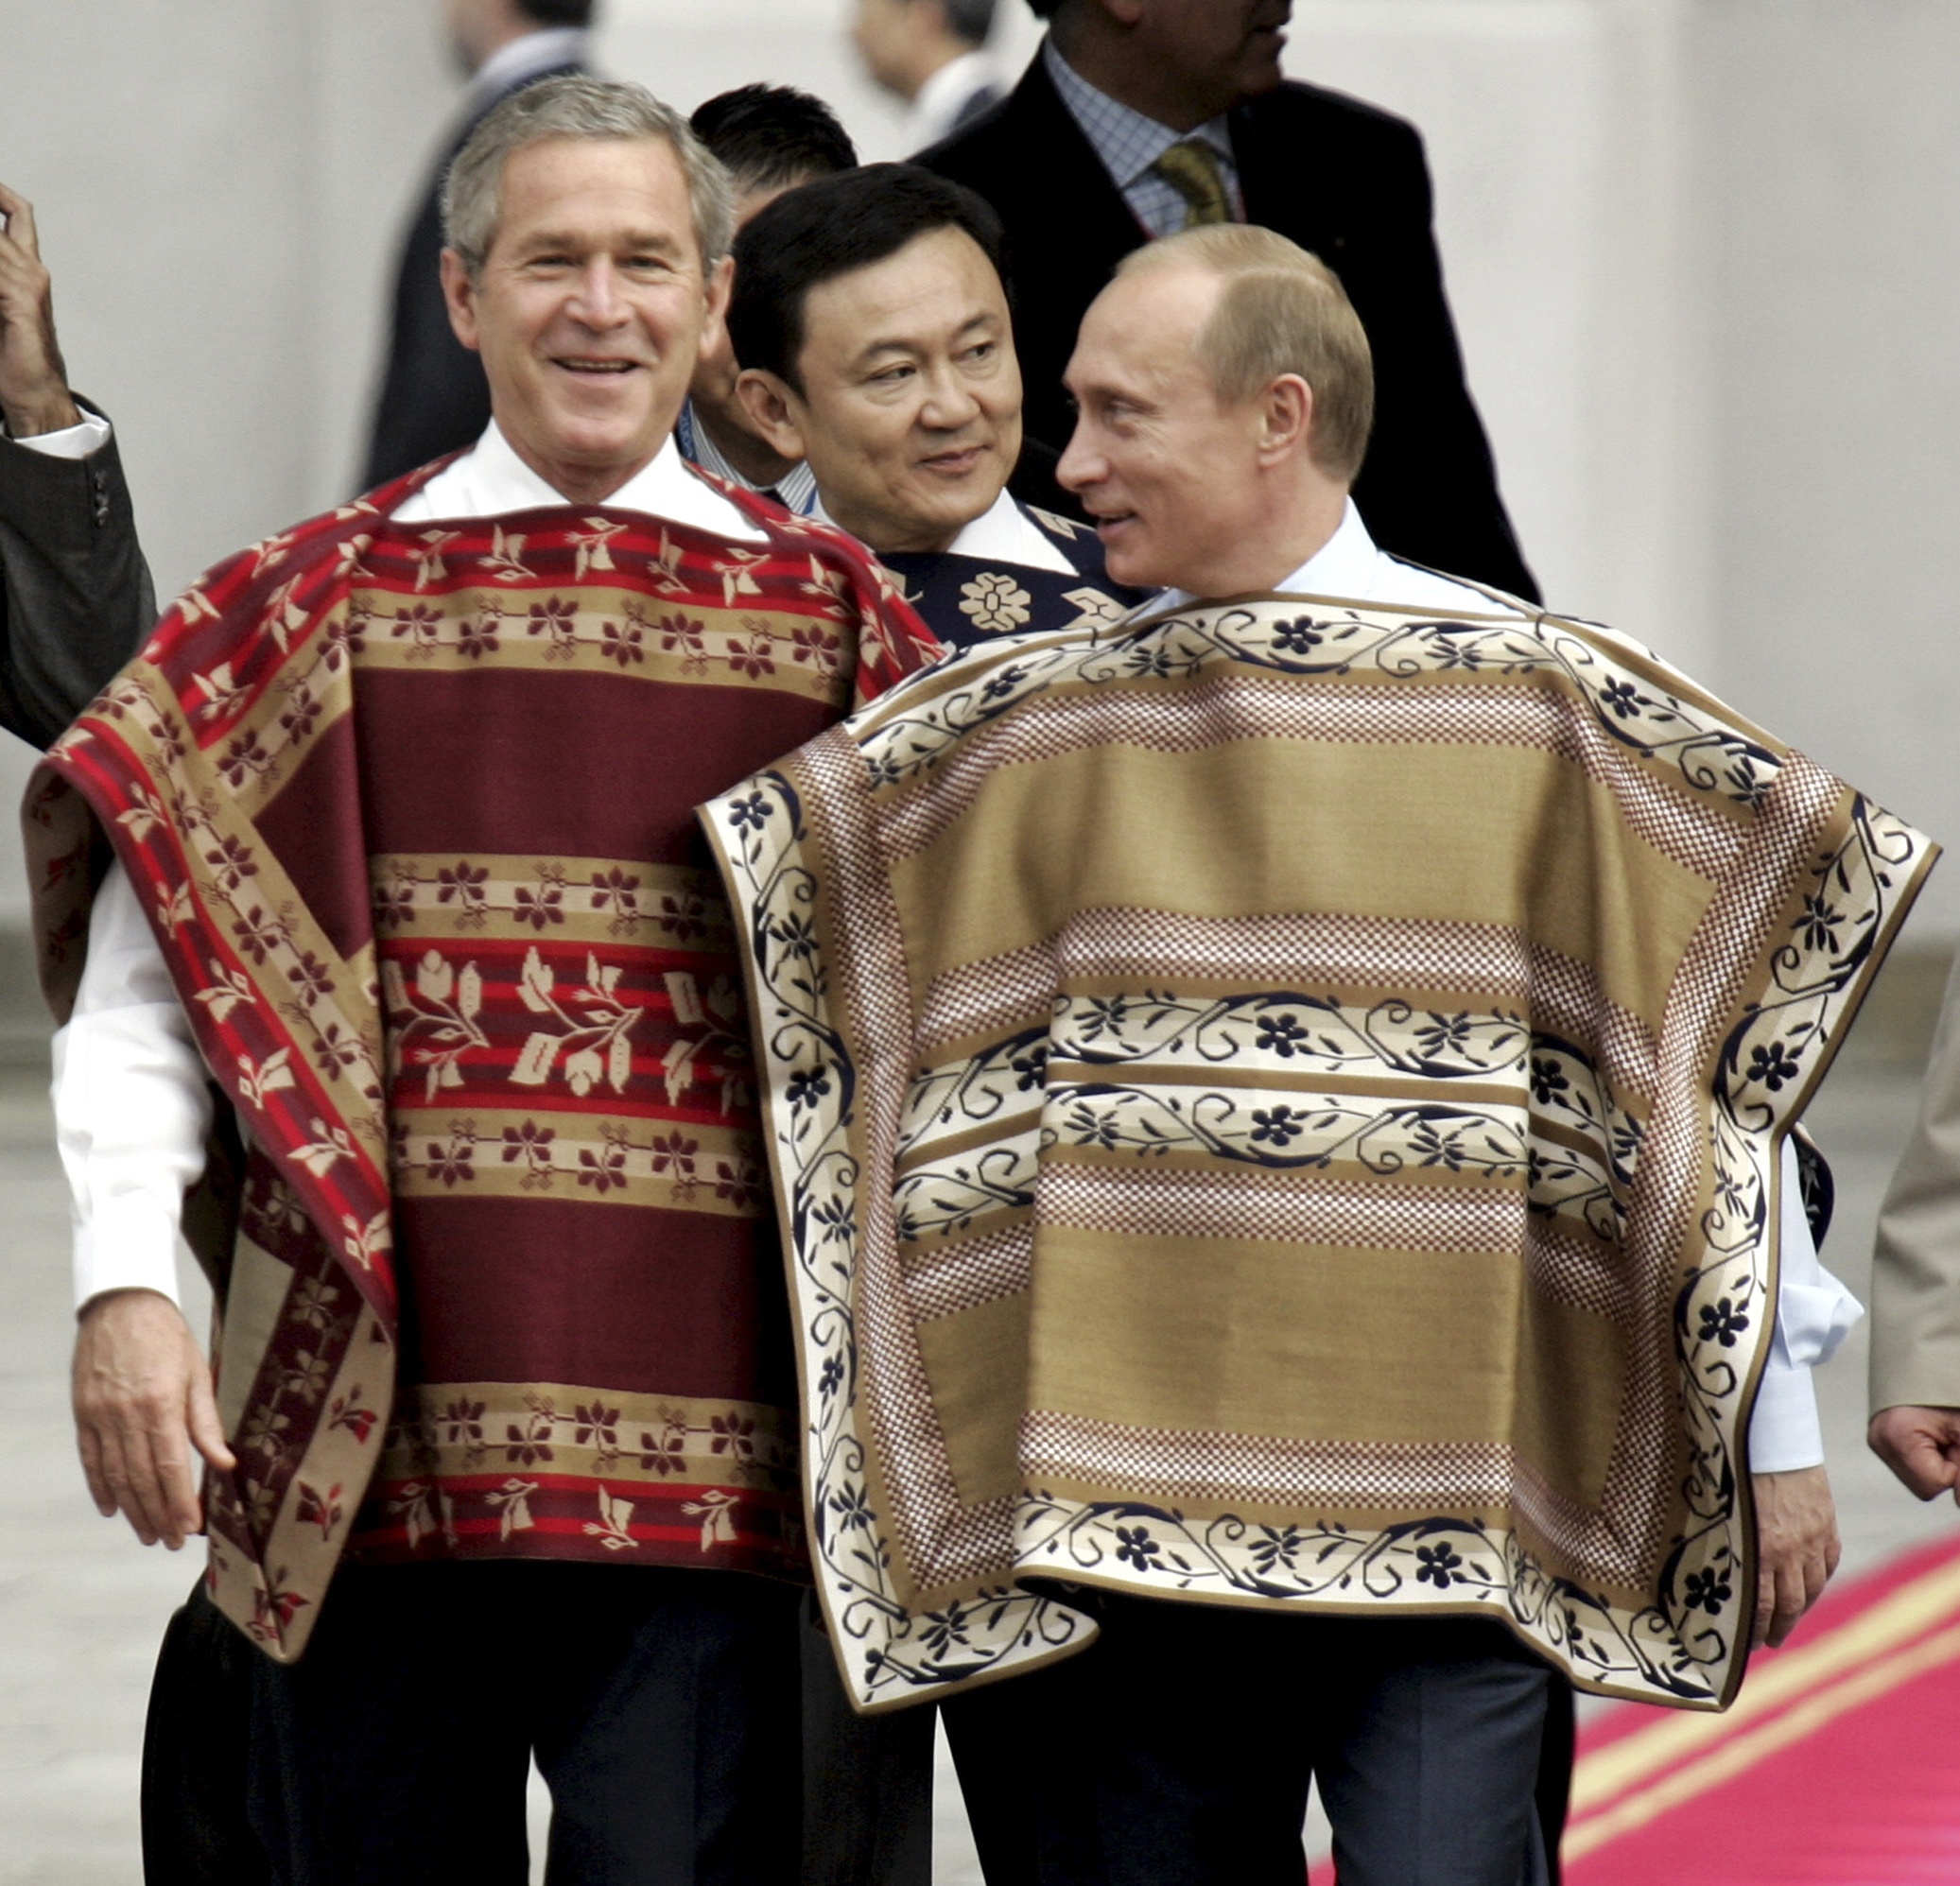 Vem sa att ponchos inte är macho? Här ses ryssen med ex-presidenten George W Bush, till vänster.